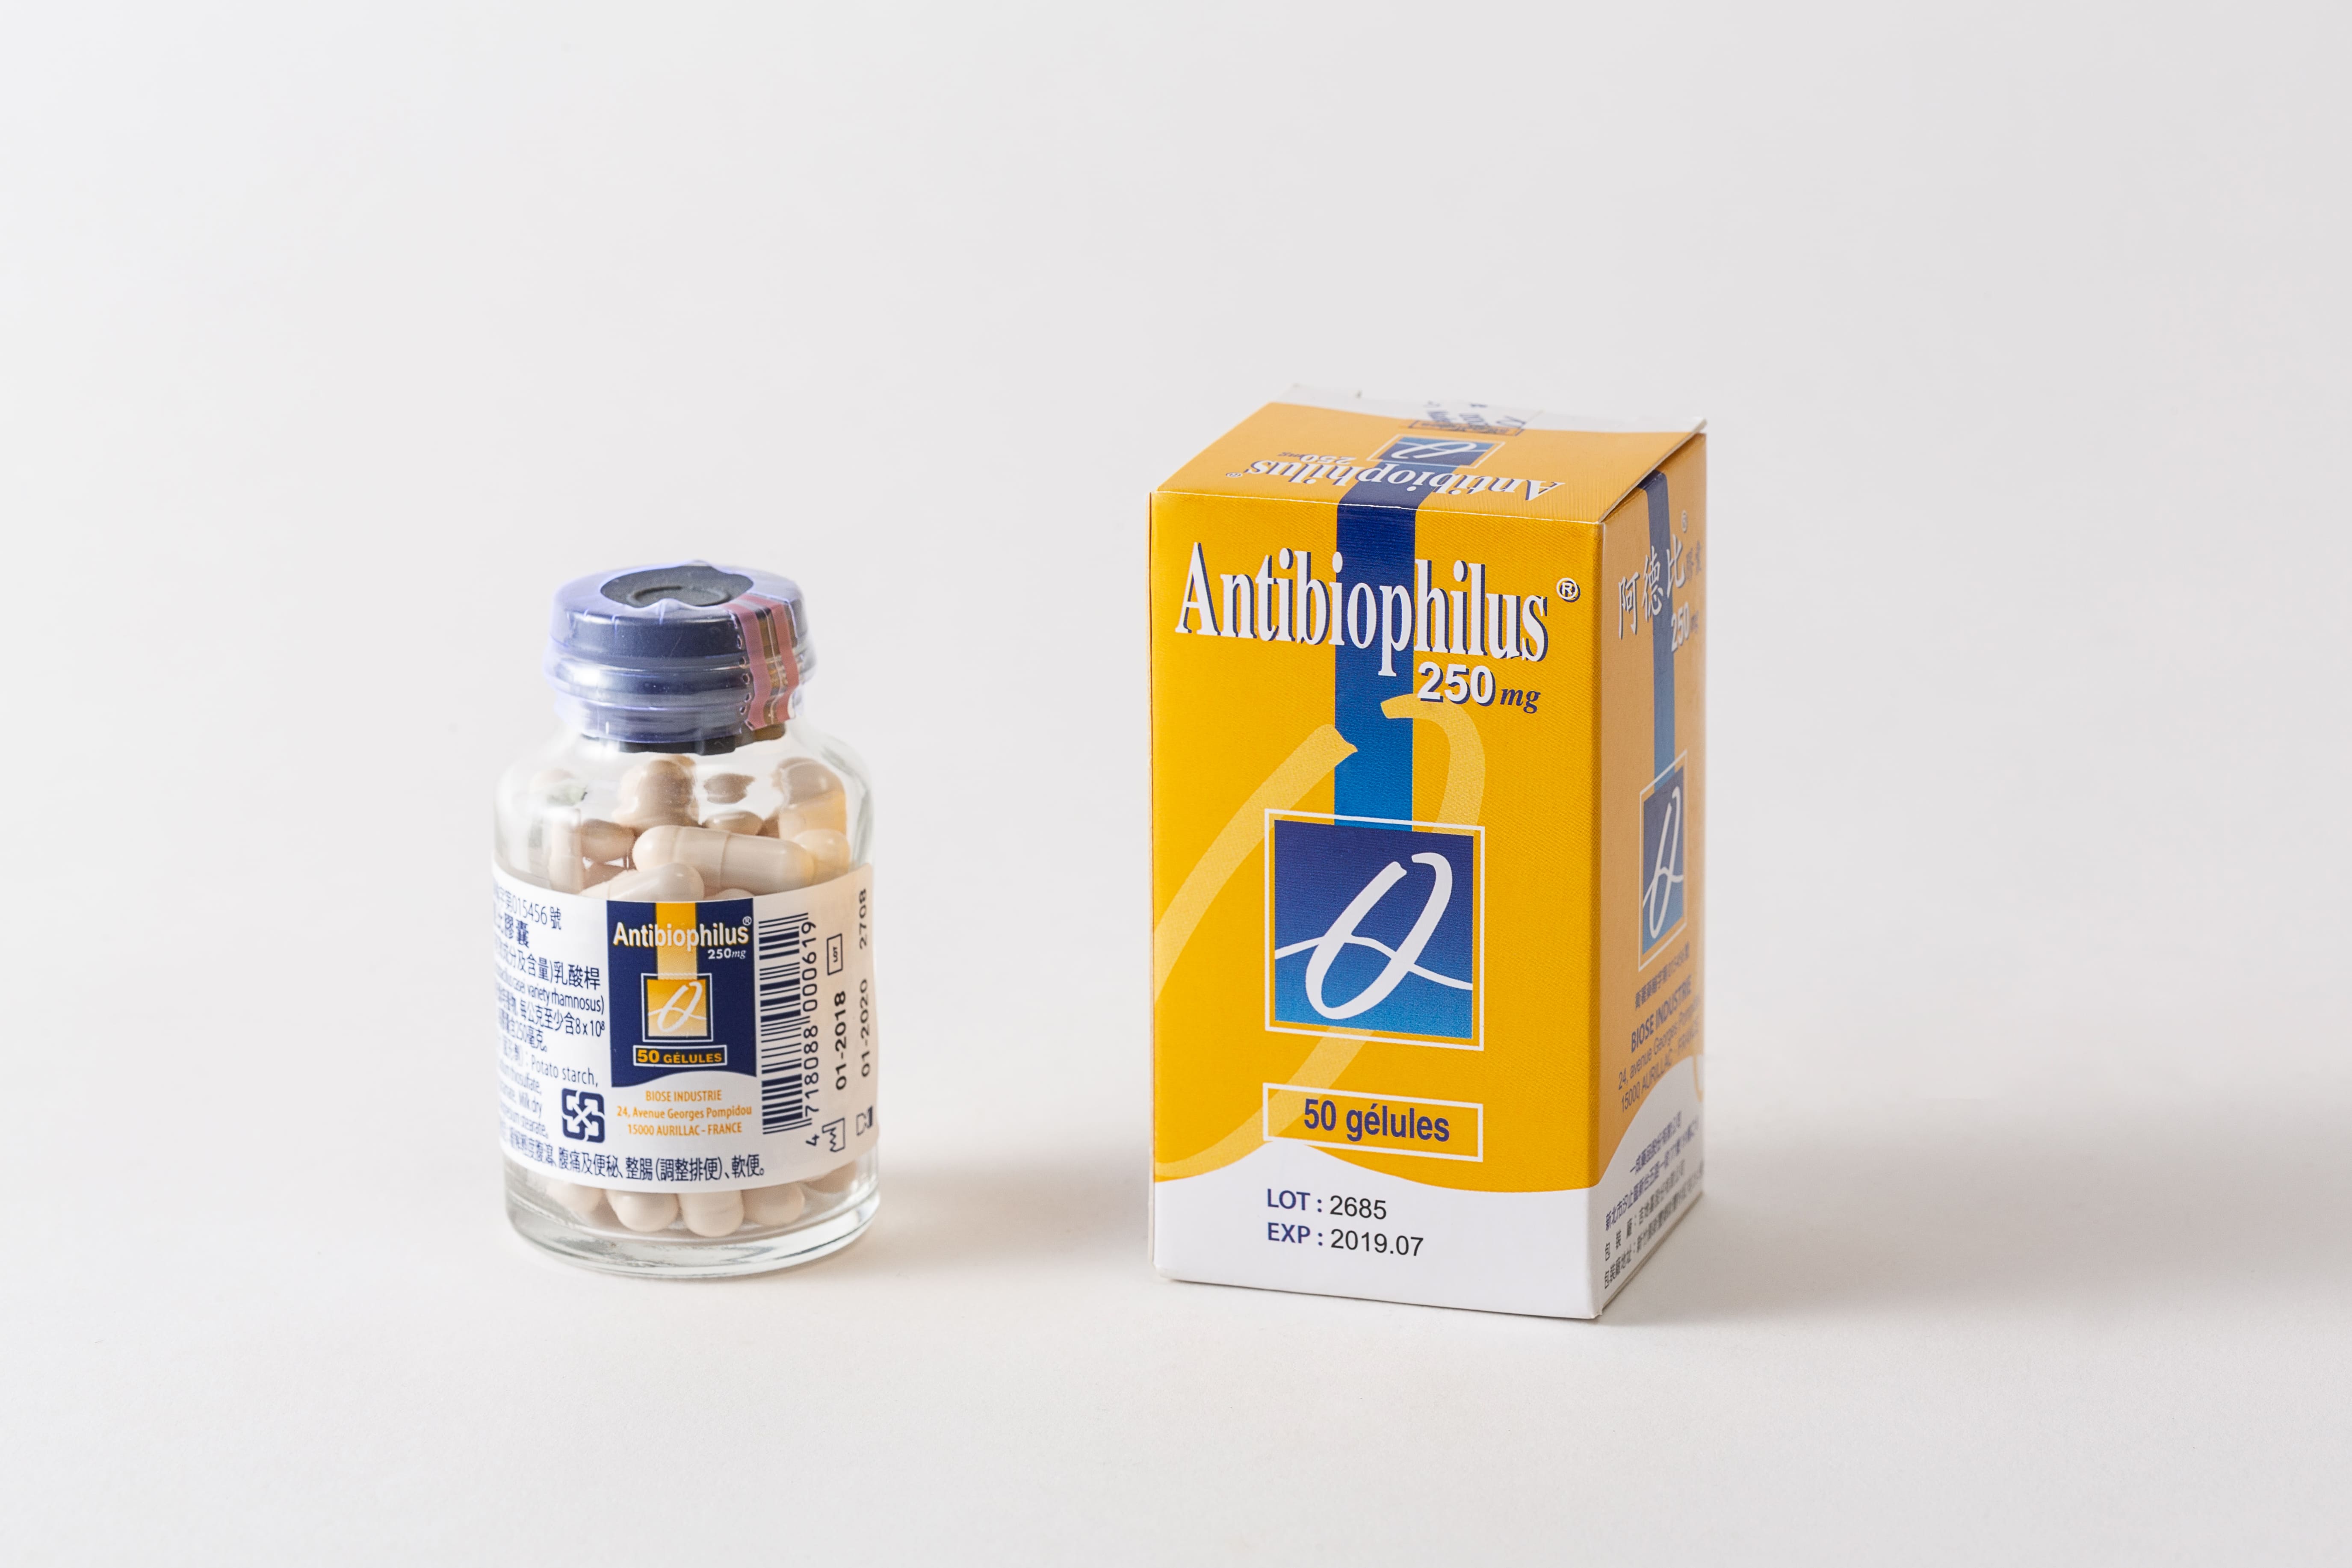 Antibiophilus capsules